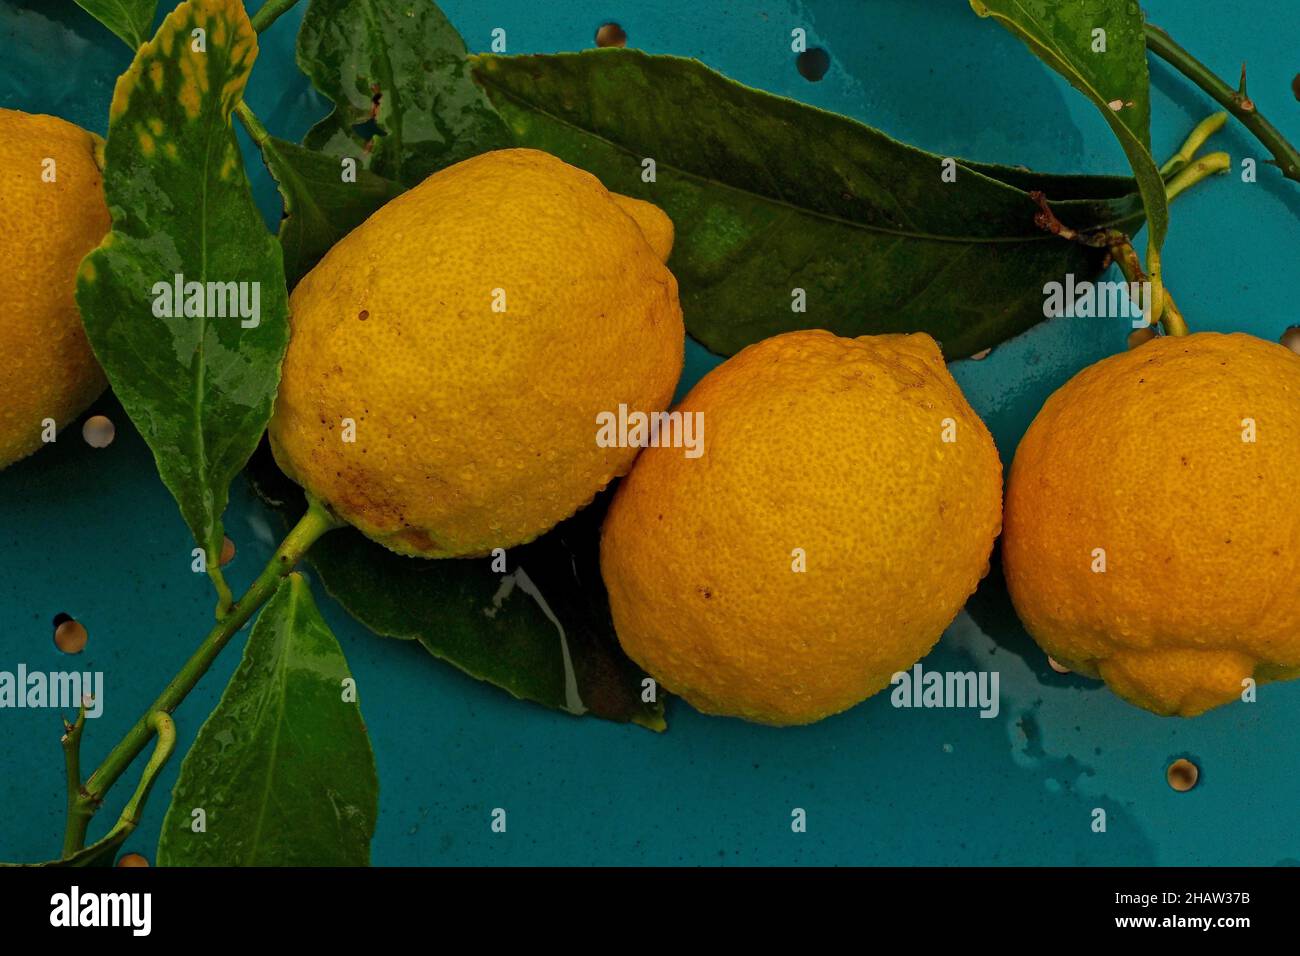 Citrons fraîchement cueillis sur la table, citrons avec feuilles, agrumes avec branche de feuilles, branche sur citron, fruits méditerranéens, jus de citron, médicinal Banque D'Images